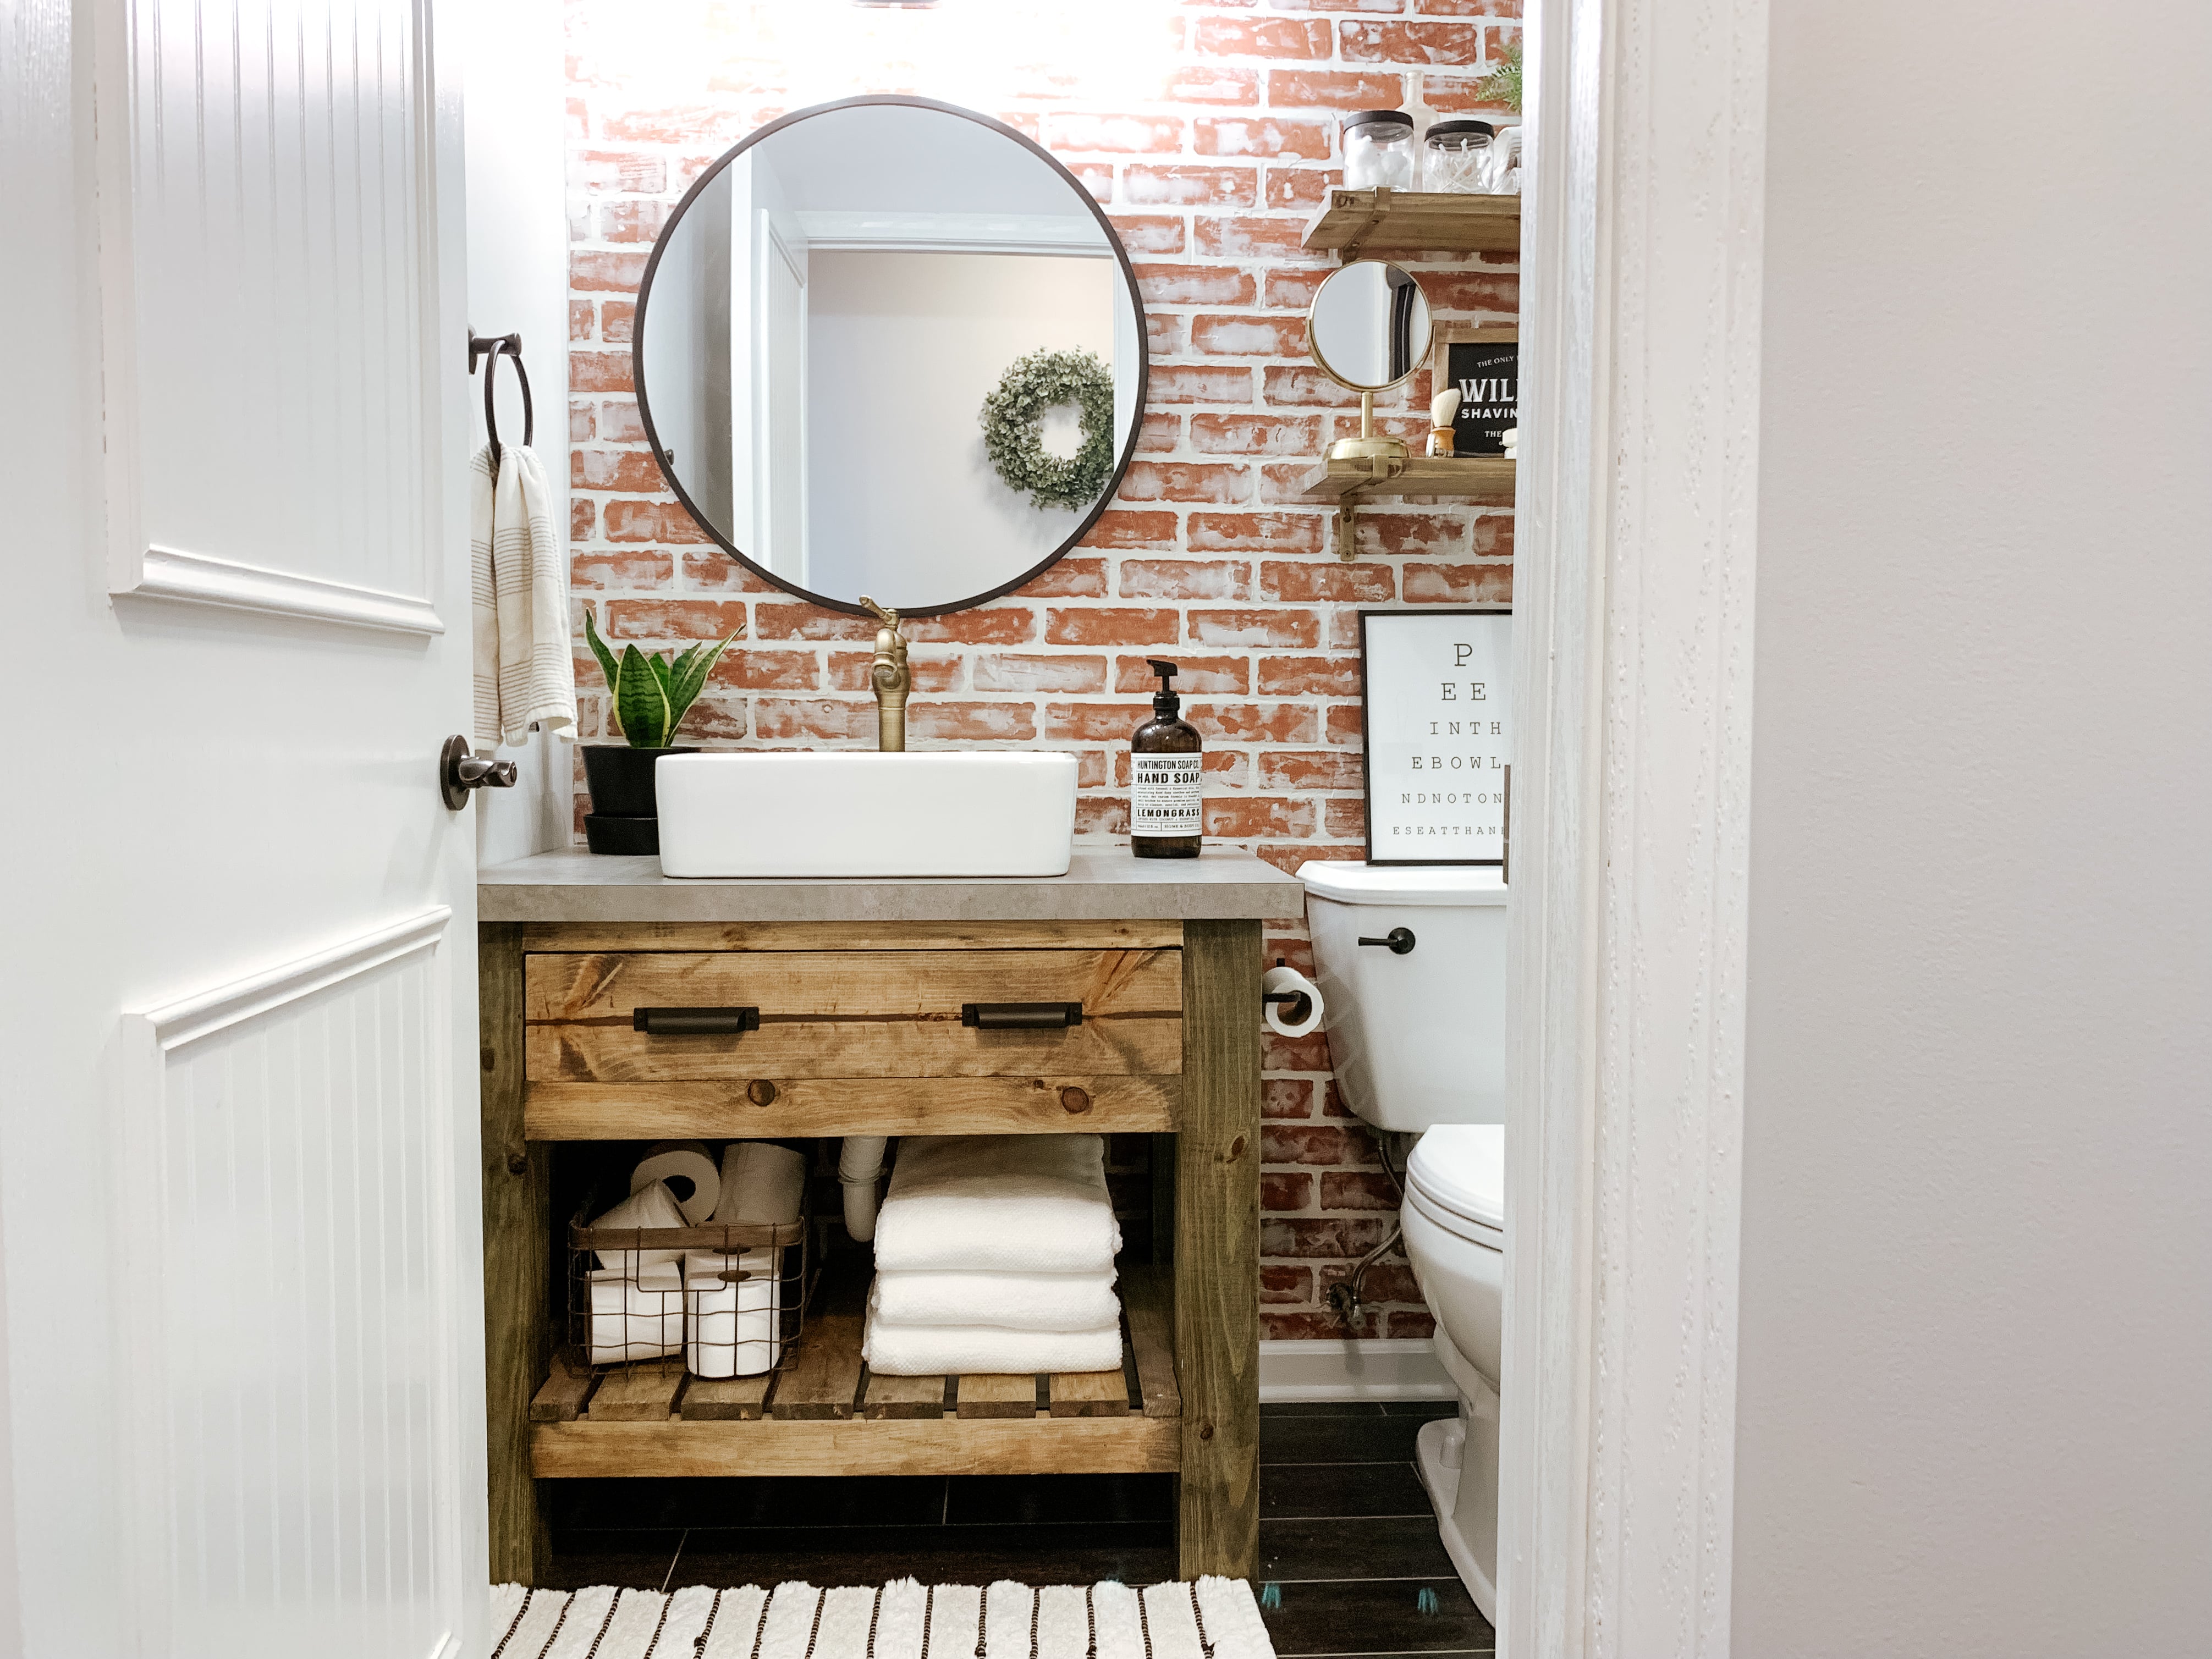 Diy Rustic Bathroom Vanity Sammy On State, How To Build Bathroom Vanity Cabinet